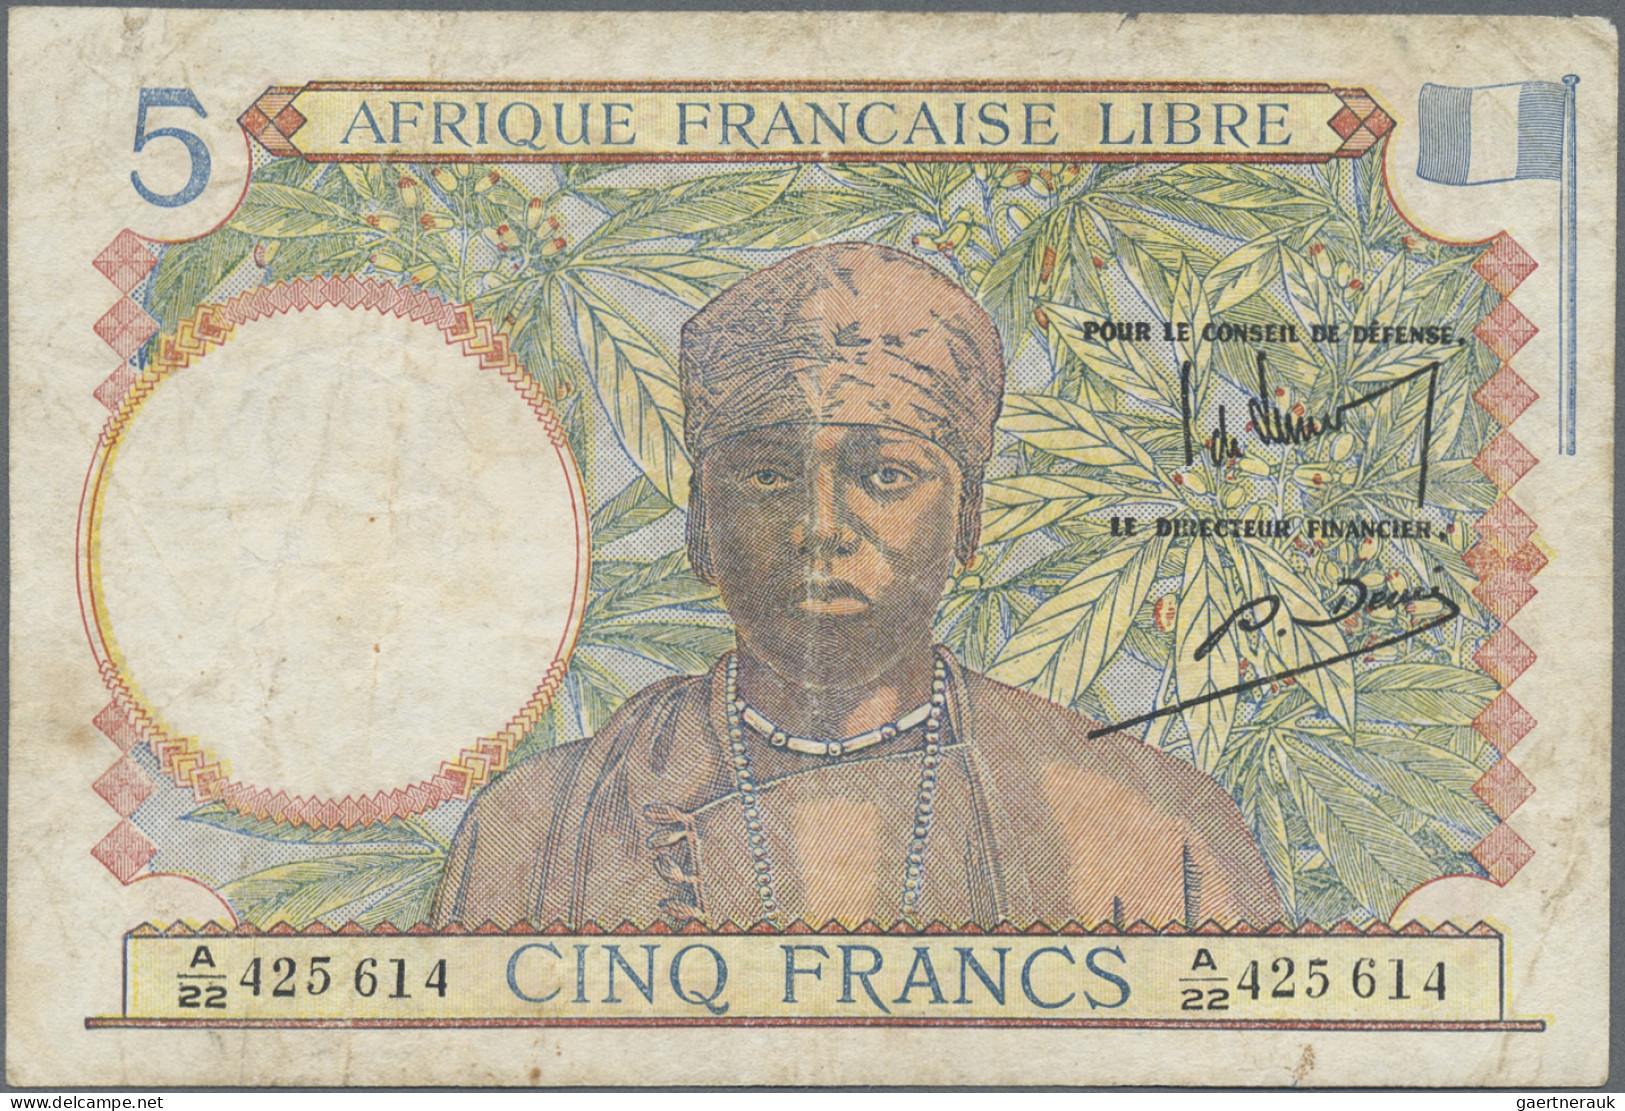 French Equatorial Africa: Afrique Française Libre, Caisse Centrale De La France - Equatorial Guinea